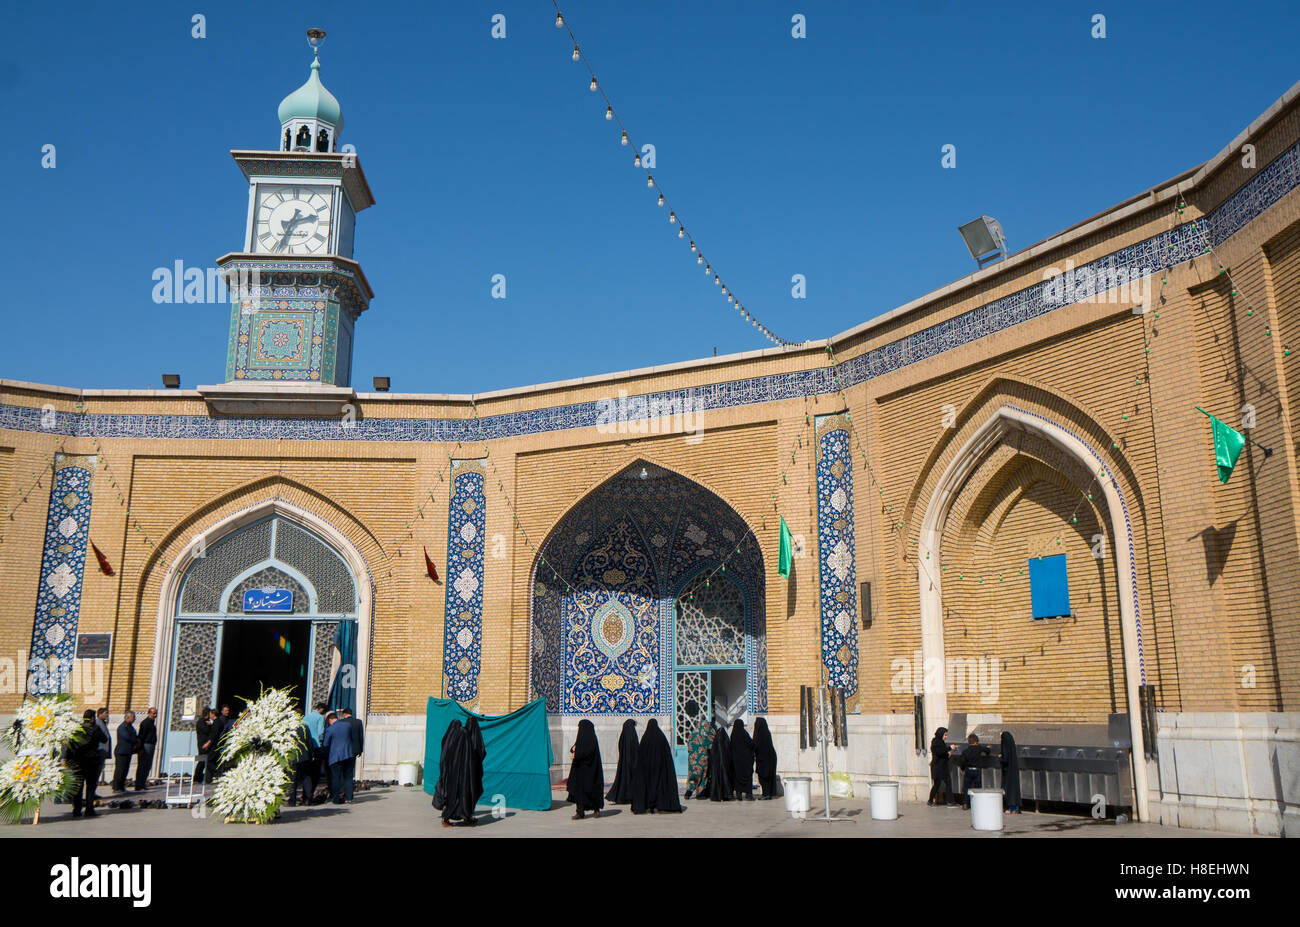 Entrées mâles et femelles distincts pour le service commémoratif à Hazrat-e Masumeh (lieu saint), Qom, Iran, Moyen-Orient Banque D'Images